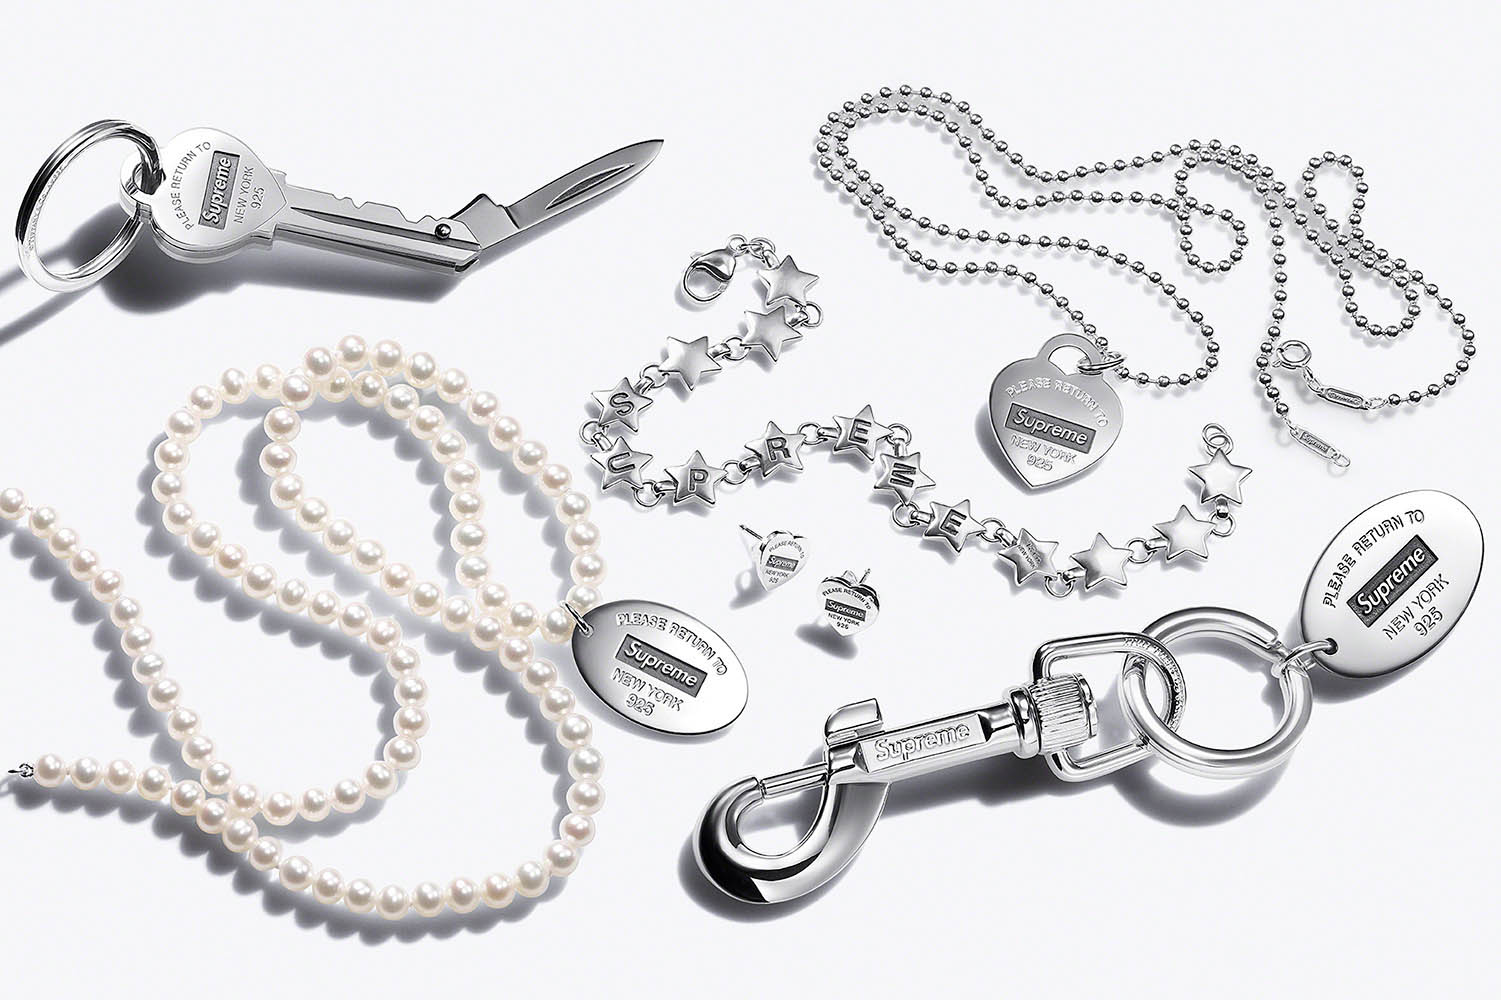 Supreme®/Tiffany & Co. Star Bracelet